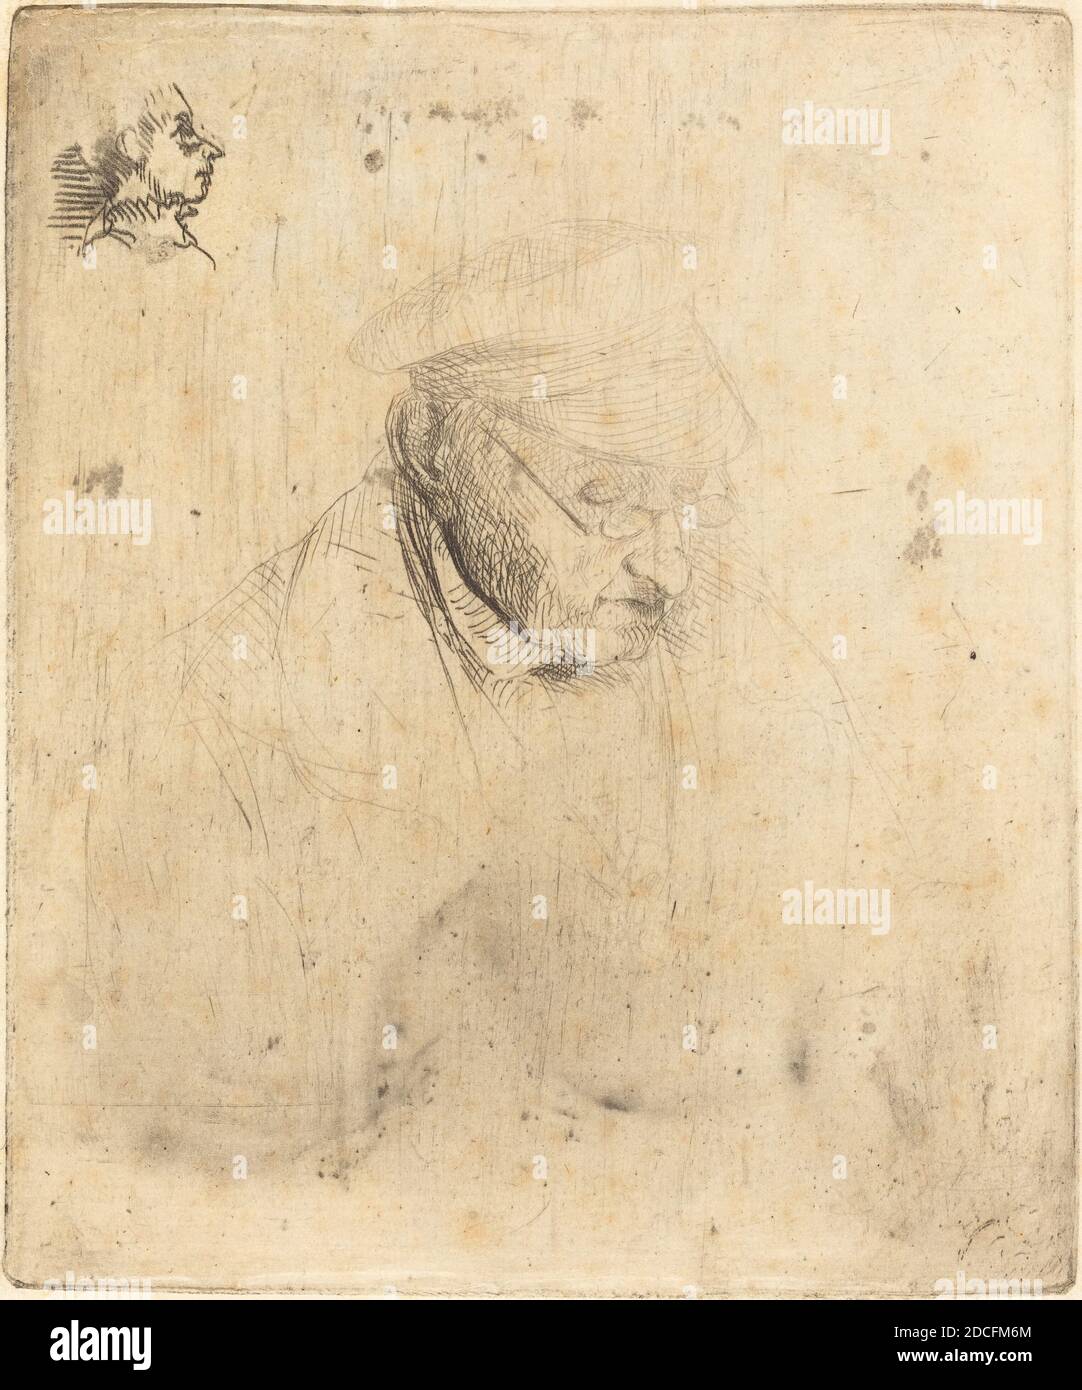 Edgar Degas, (artista), francese, 1834 - 1917, René-Hilaire de gas, nonno dell'artista, 1856, incisione e punto secco, piatto: 12.9 x 10.9 cm (5 1/16 x 4 5/16 pollici), foglio: 24.6 x 16.6 cm (9 11/16 x 6 9/16 pollici Foto Stock